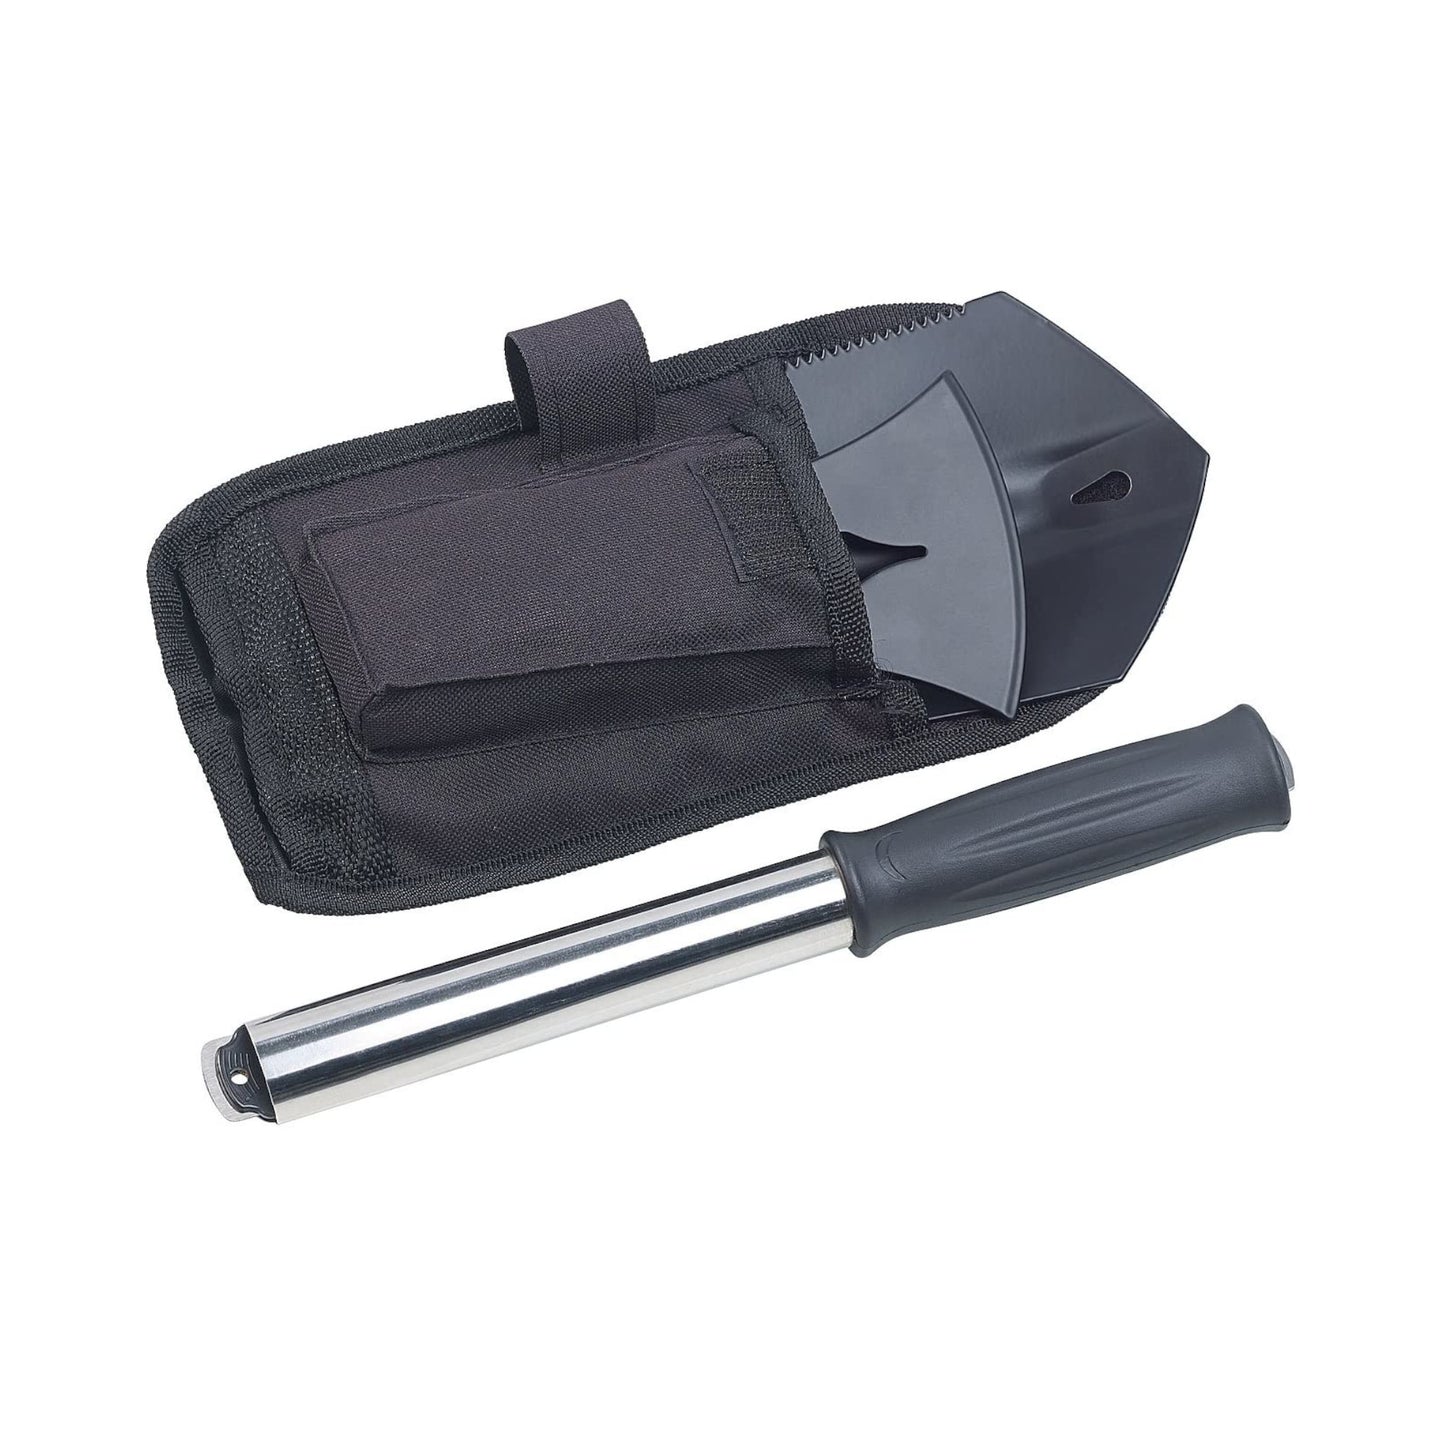 6-1 Axe Multi Tool - Koolstofstalen spade, zaag, mes, flesopener, spijkertrekker